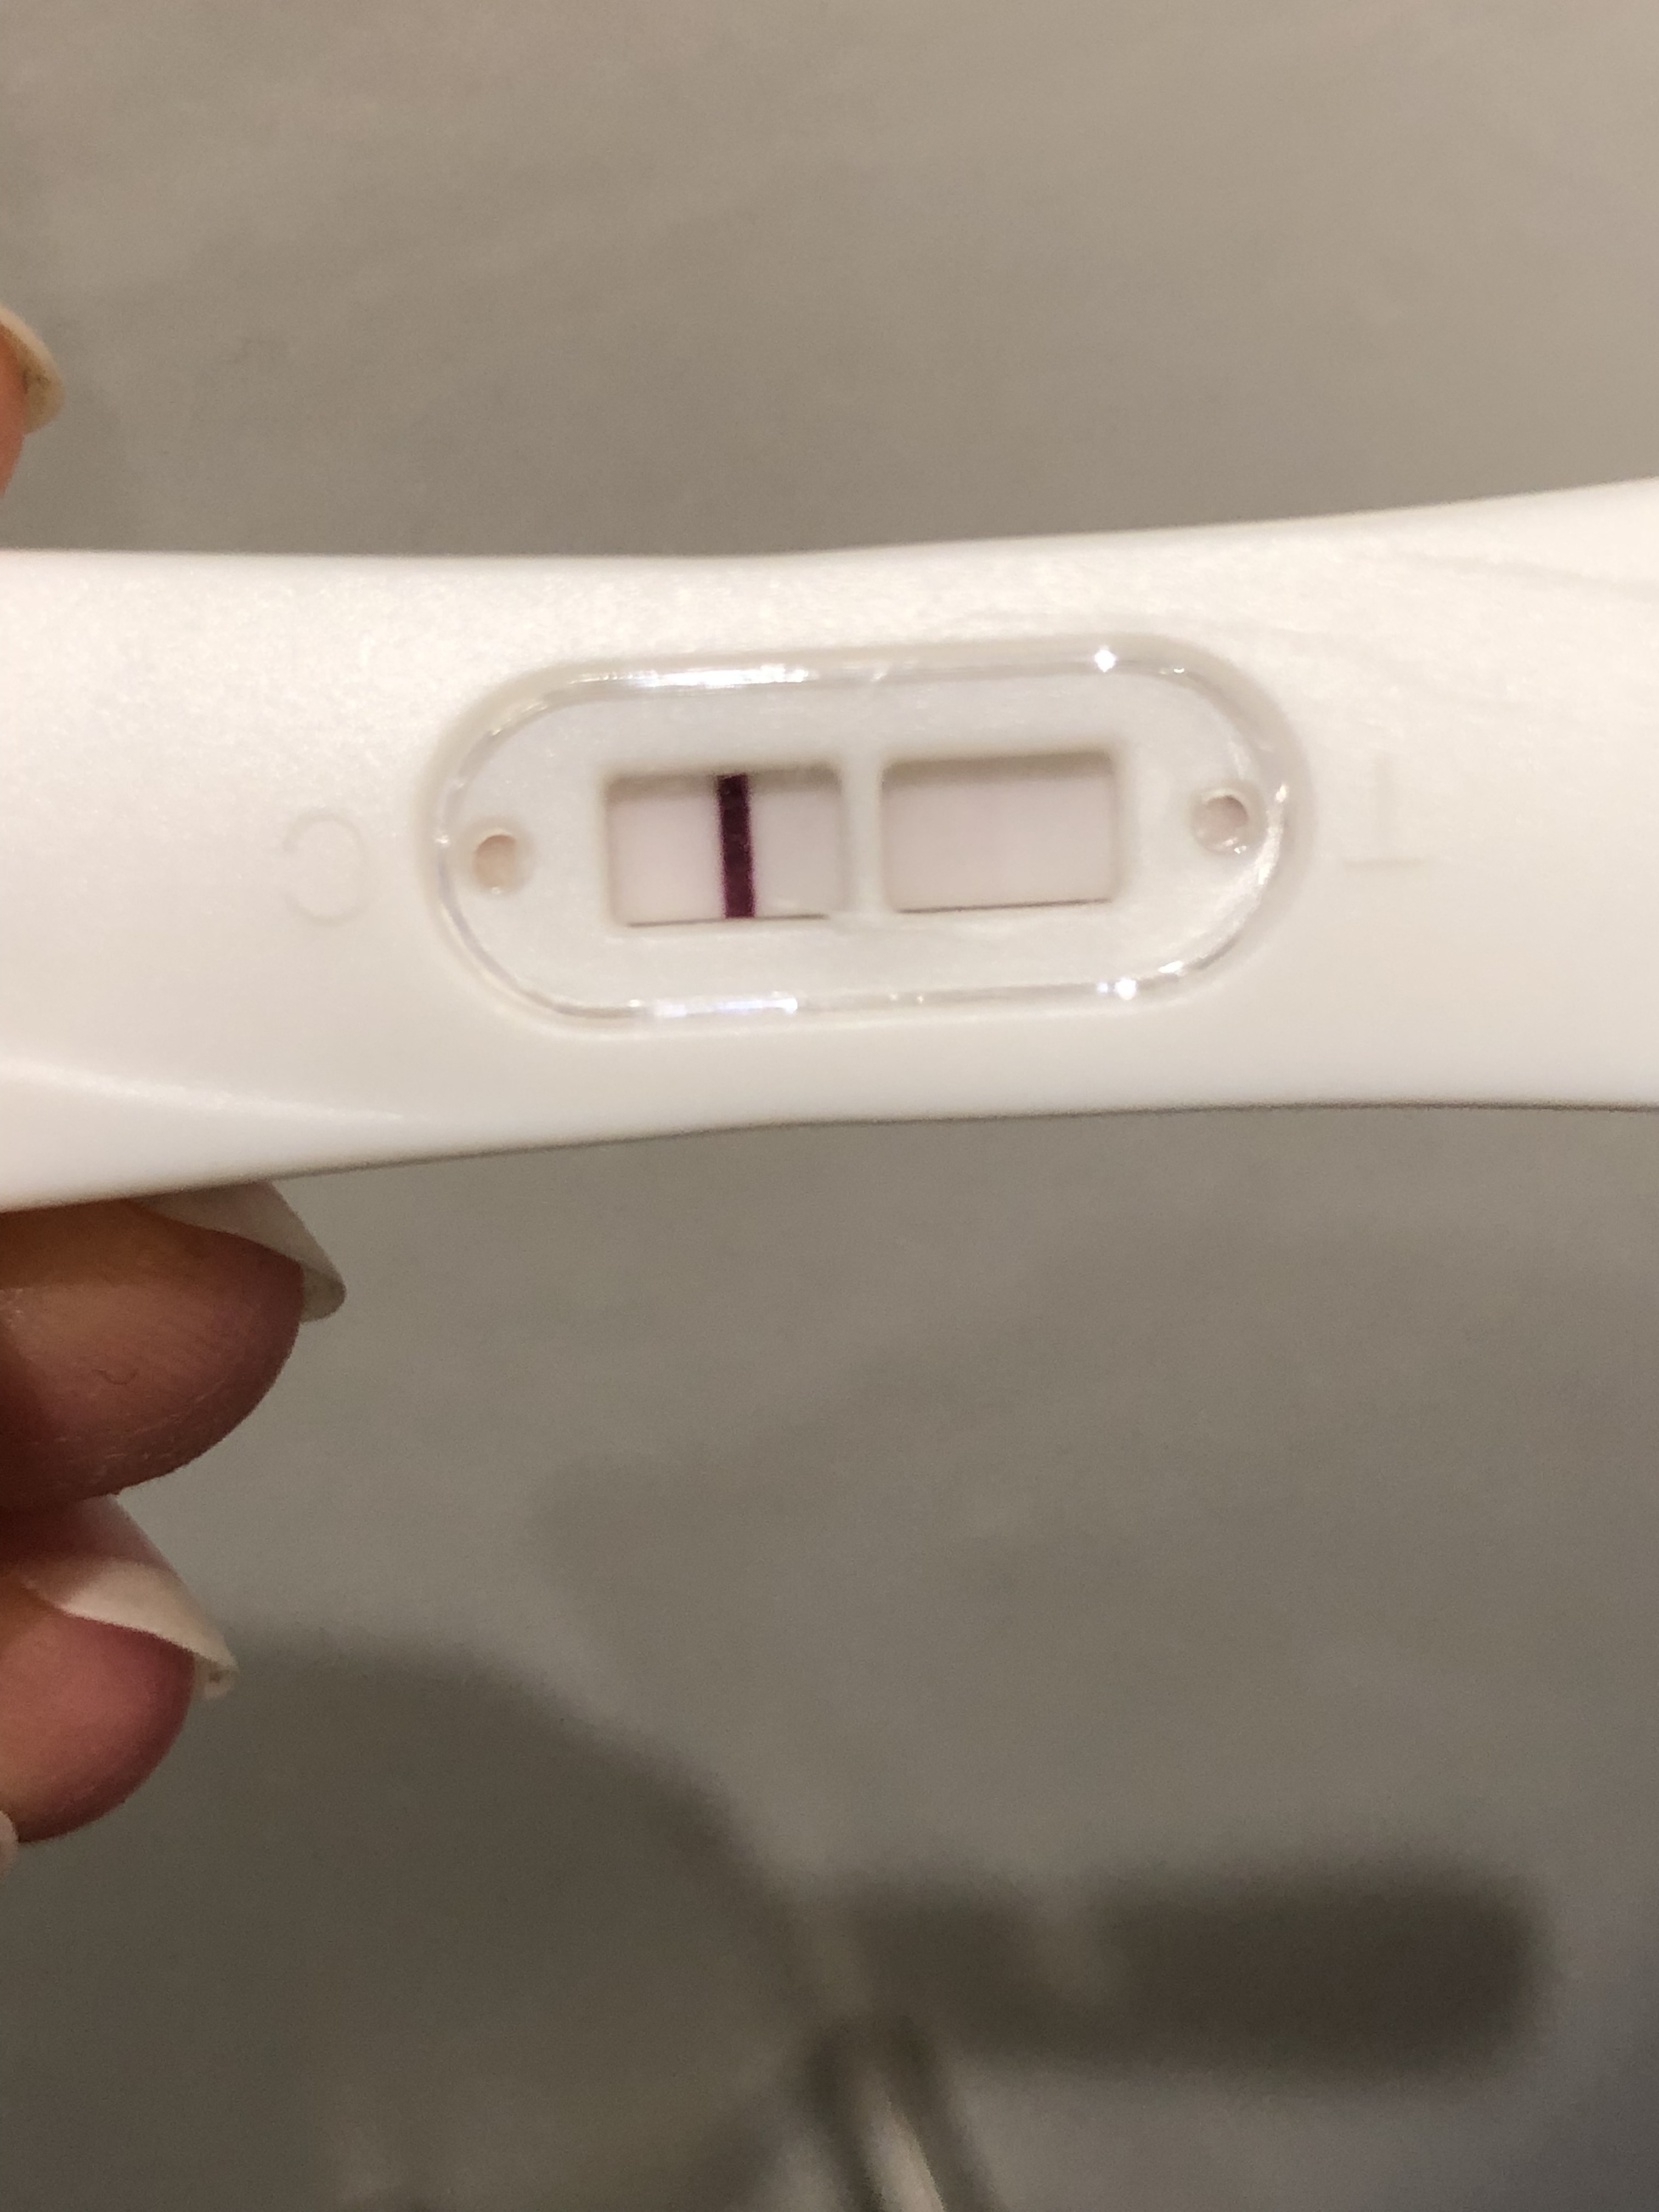 Er G-test positiv ? Hjælp - Vil gerne gravid - Babyklar